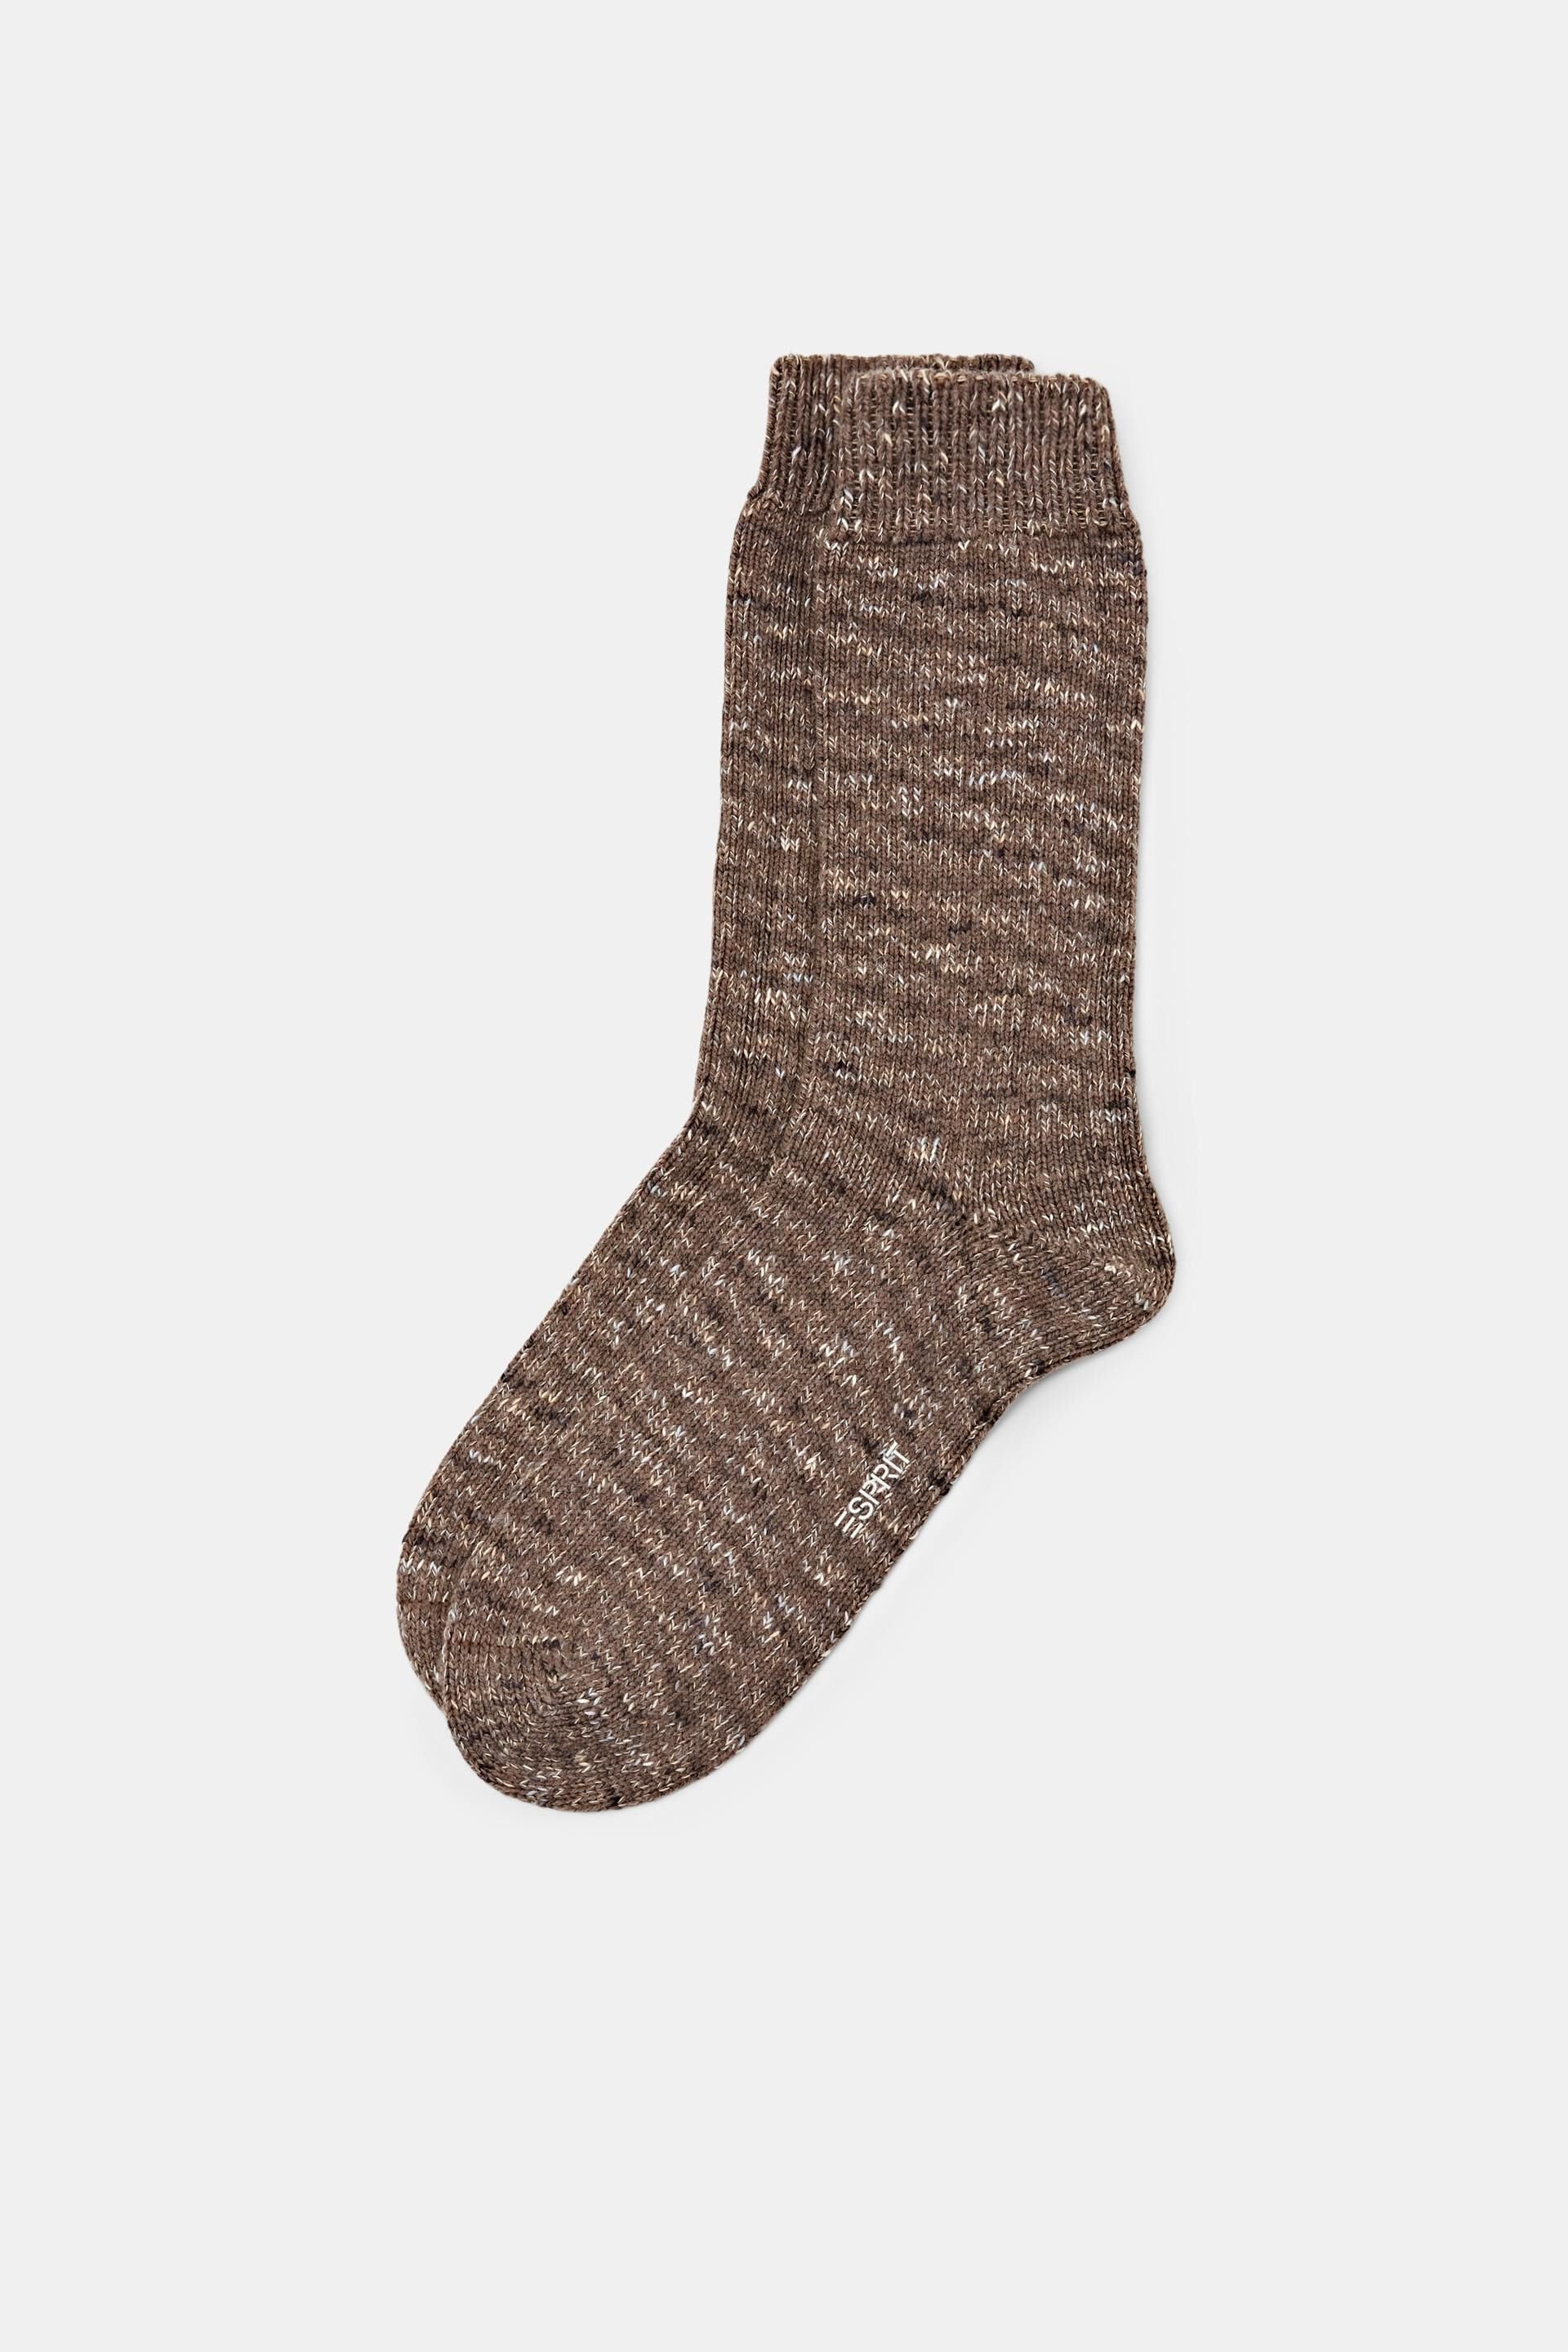 Esprit socks Chunky boot knit